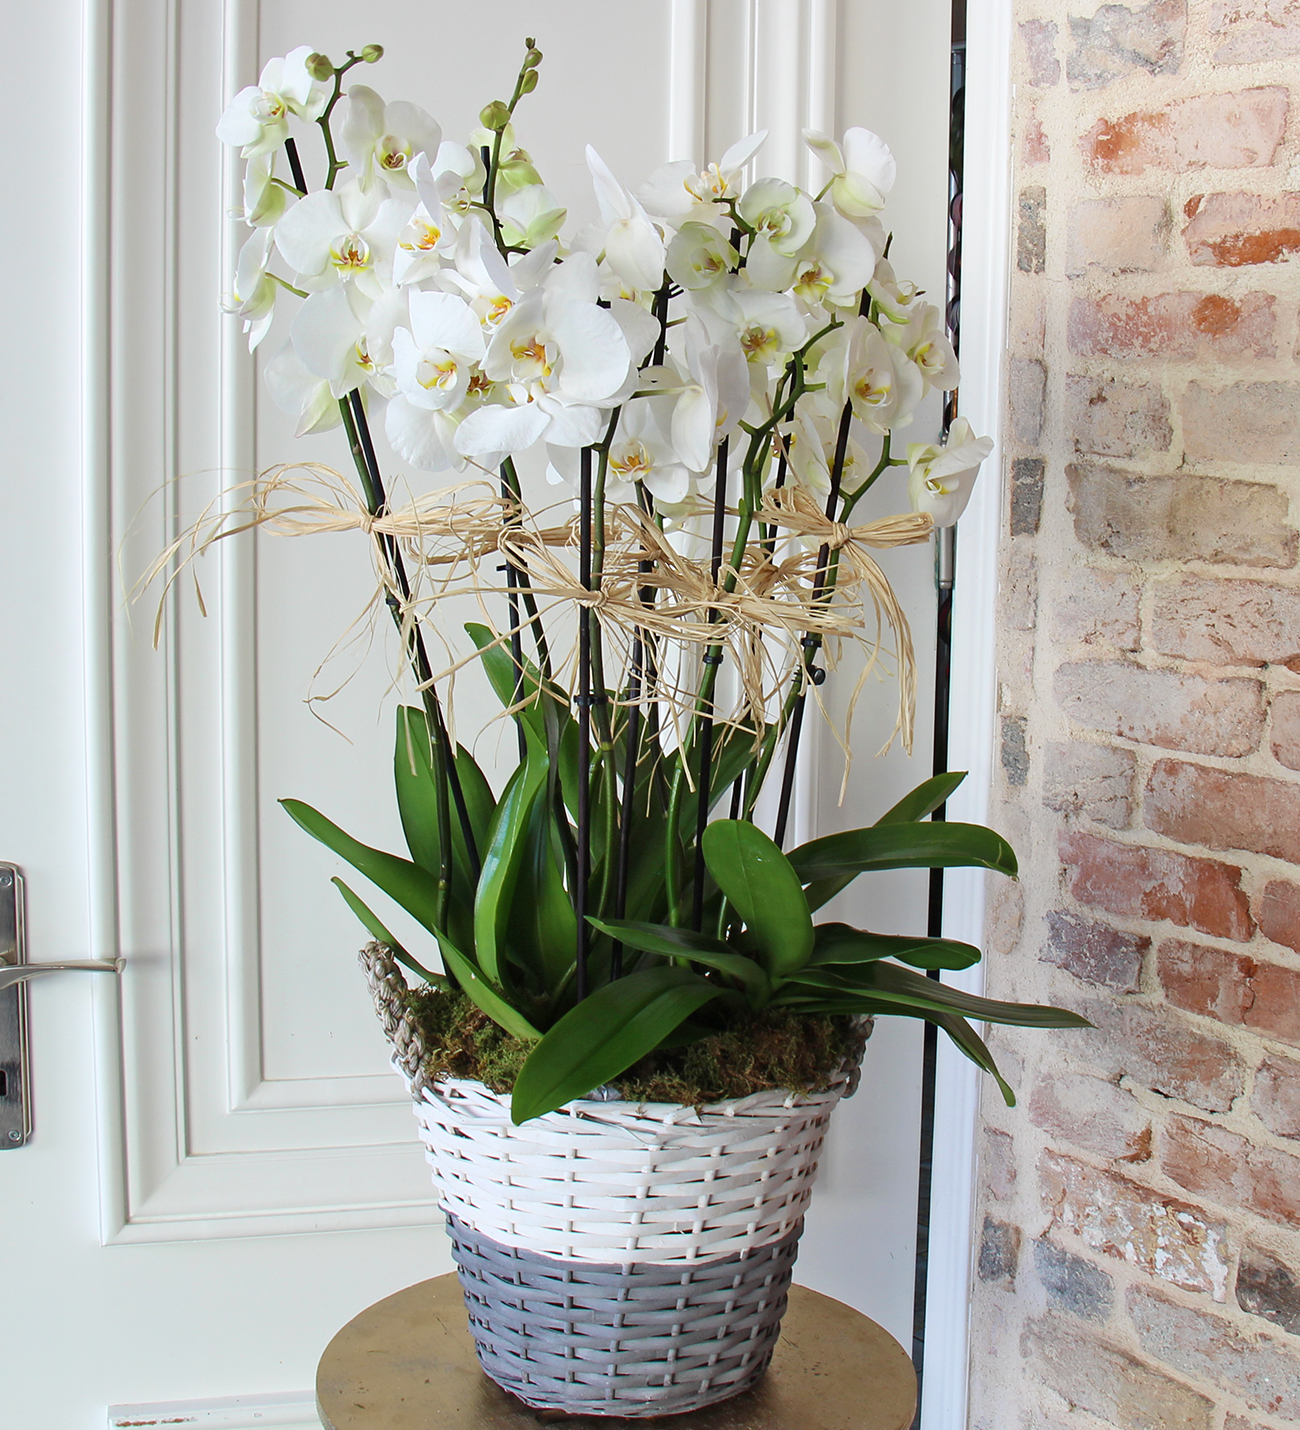 Matila sepette 8 dallı beyaz orkide tasarımı